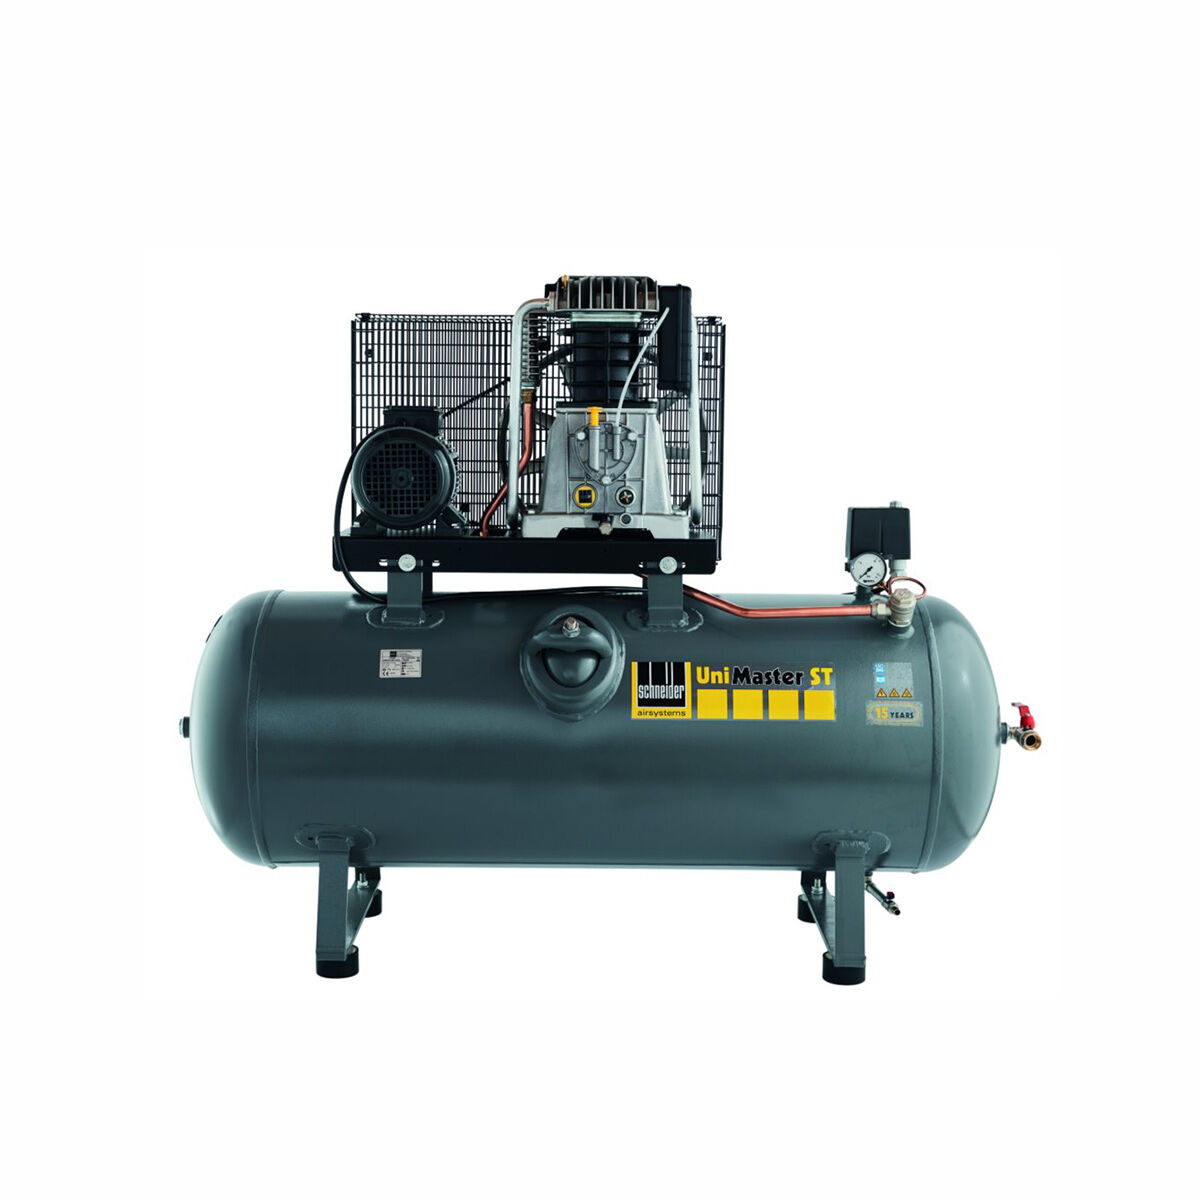 Schneider-Kompressor UNM STL 1250-10-270 C 1121570220